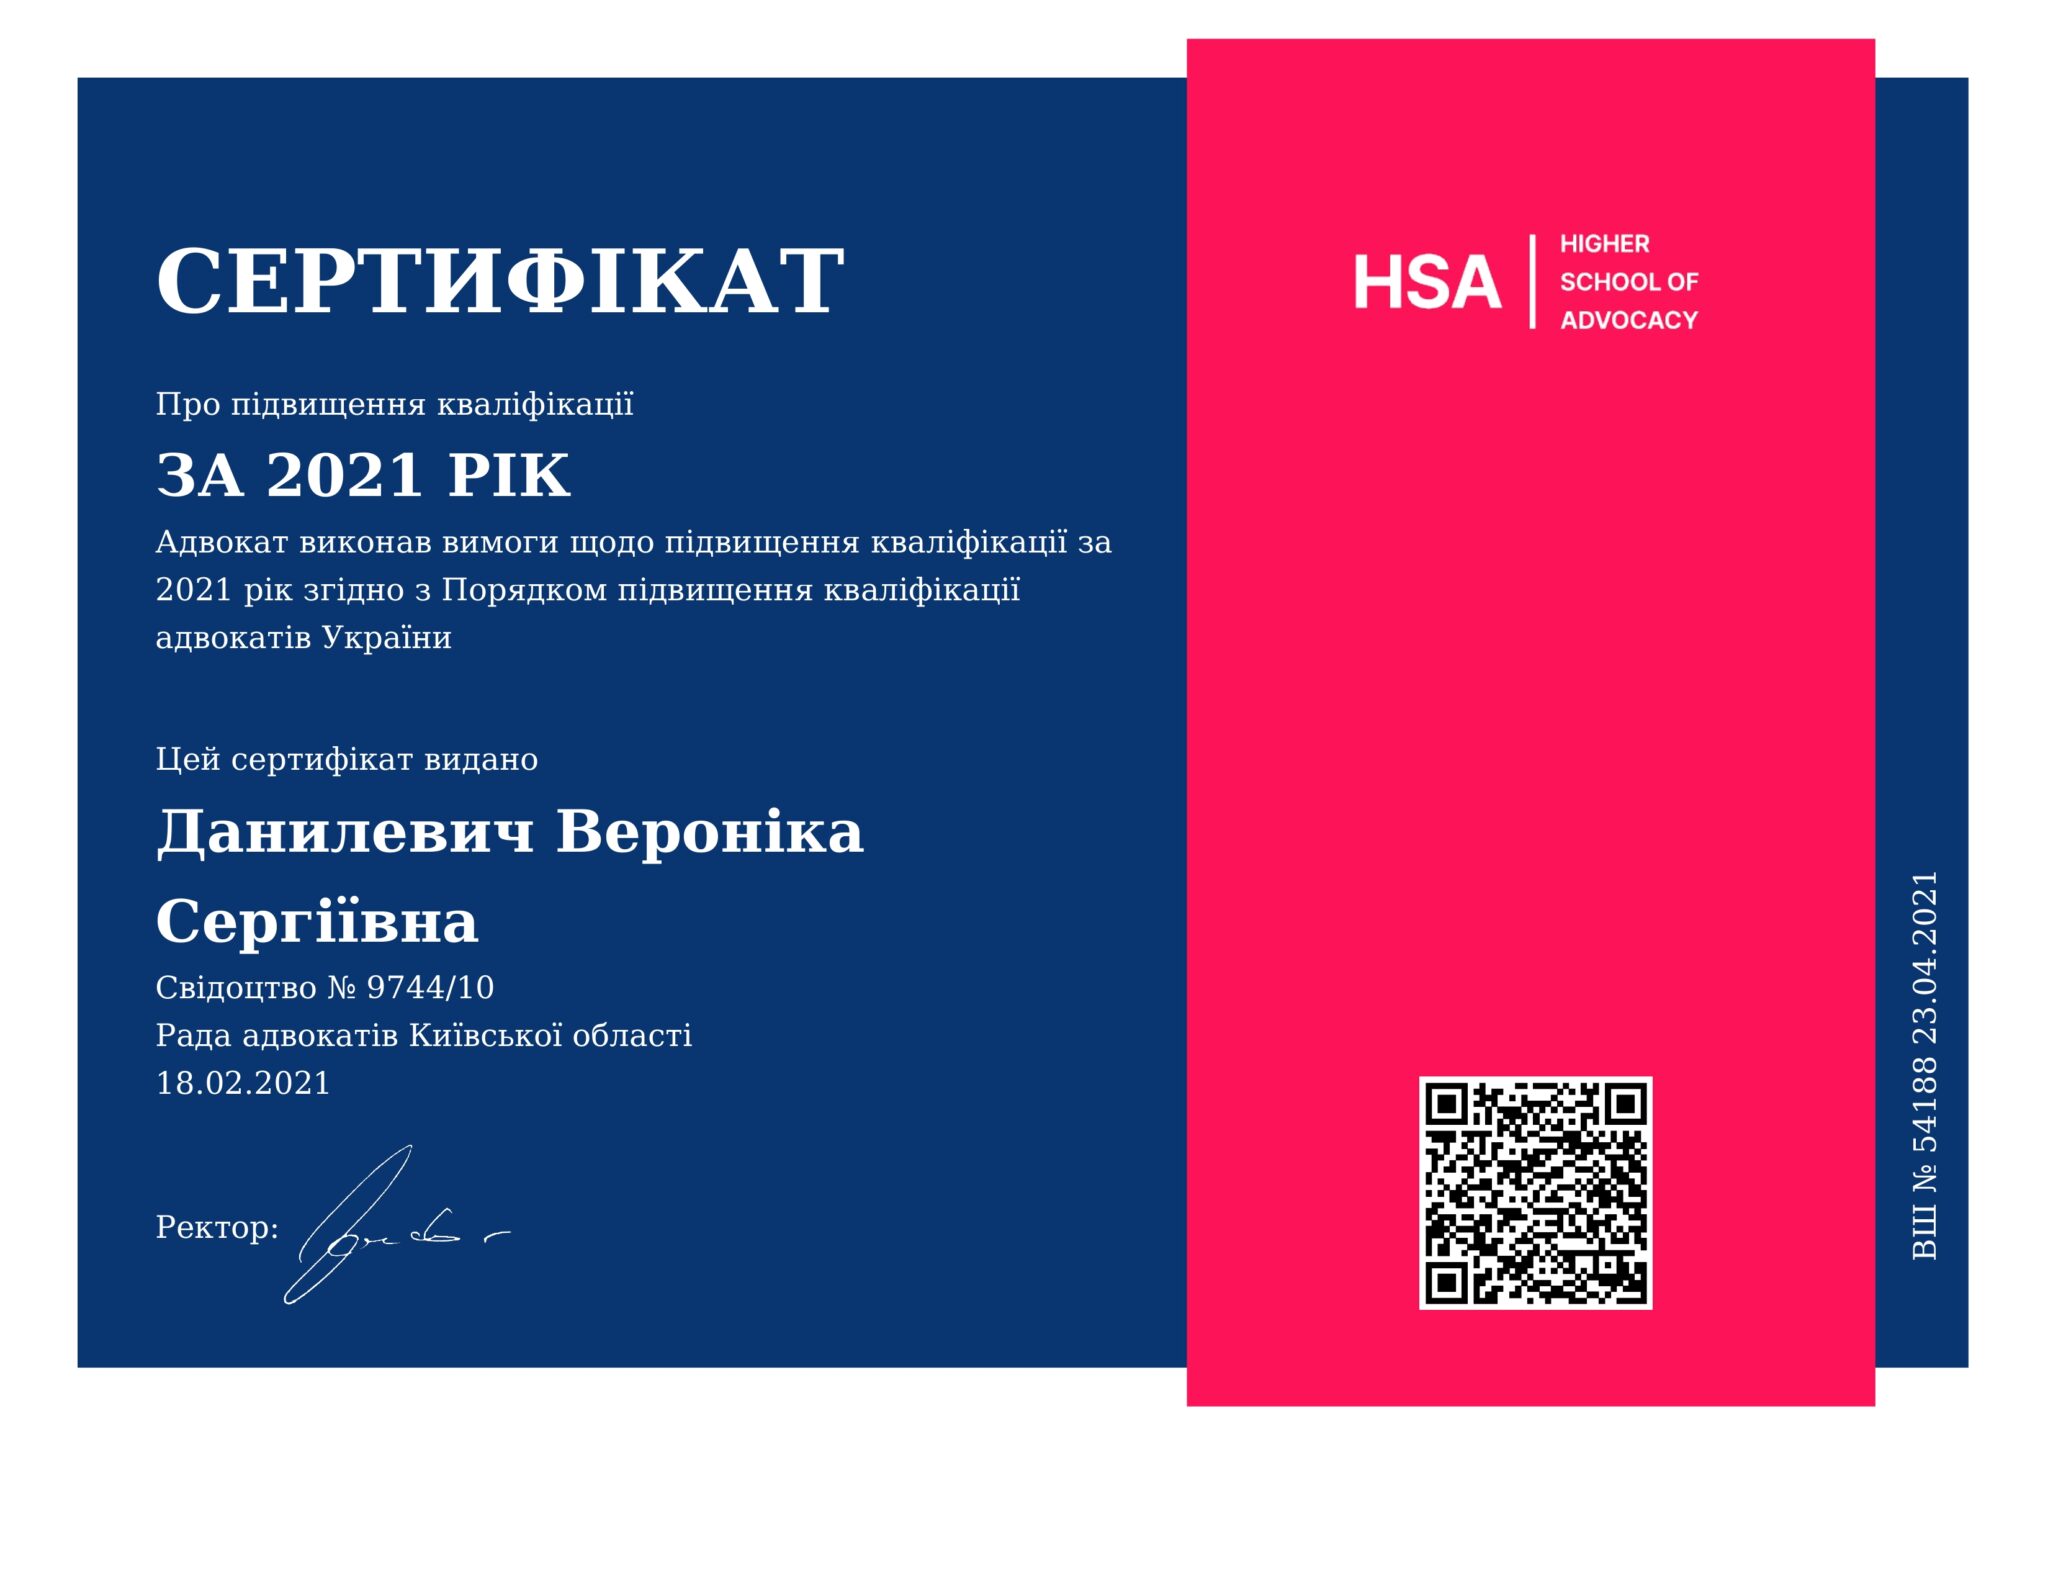 Сертифікат про підвищення кваліфікації адвоката Данилевич Вероніки Сергіївни за 2021 рік